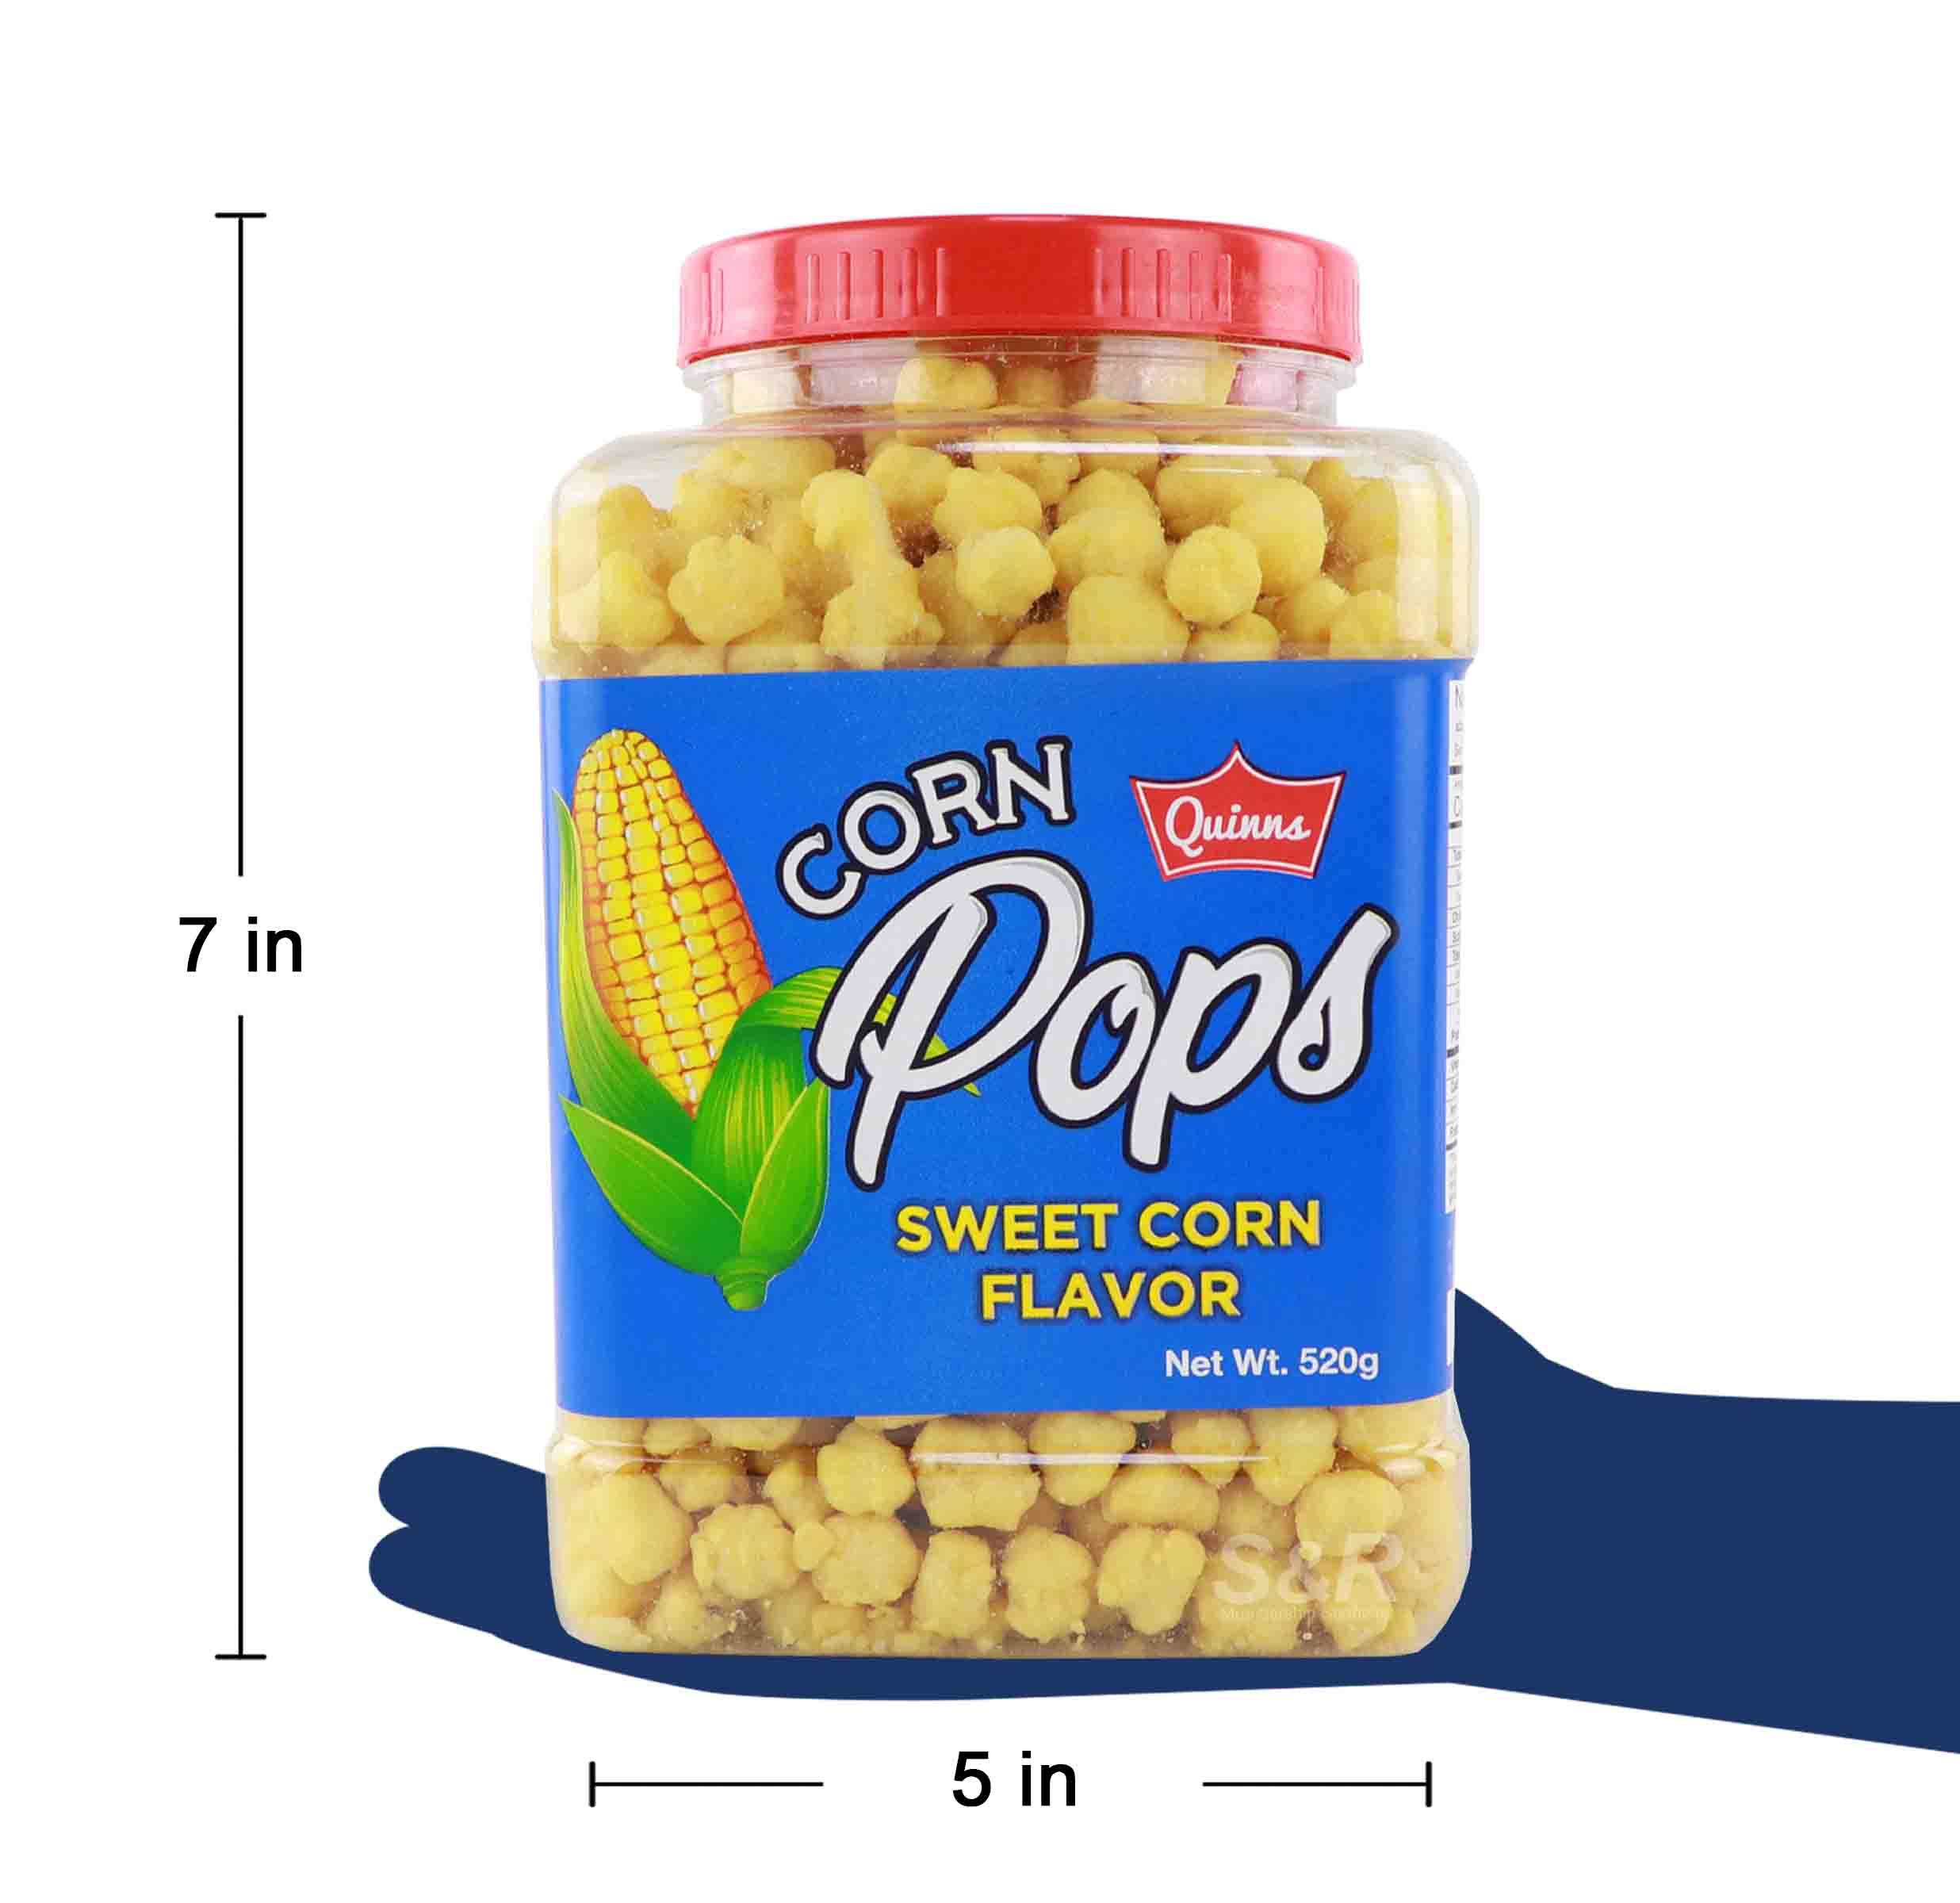 Sweet corn flavor